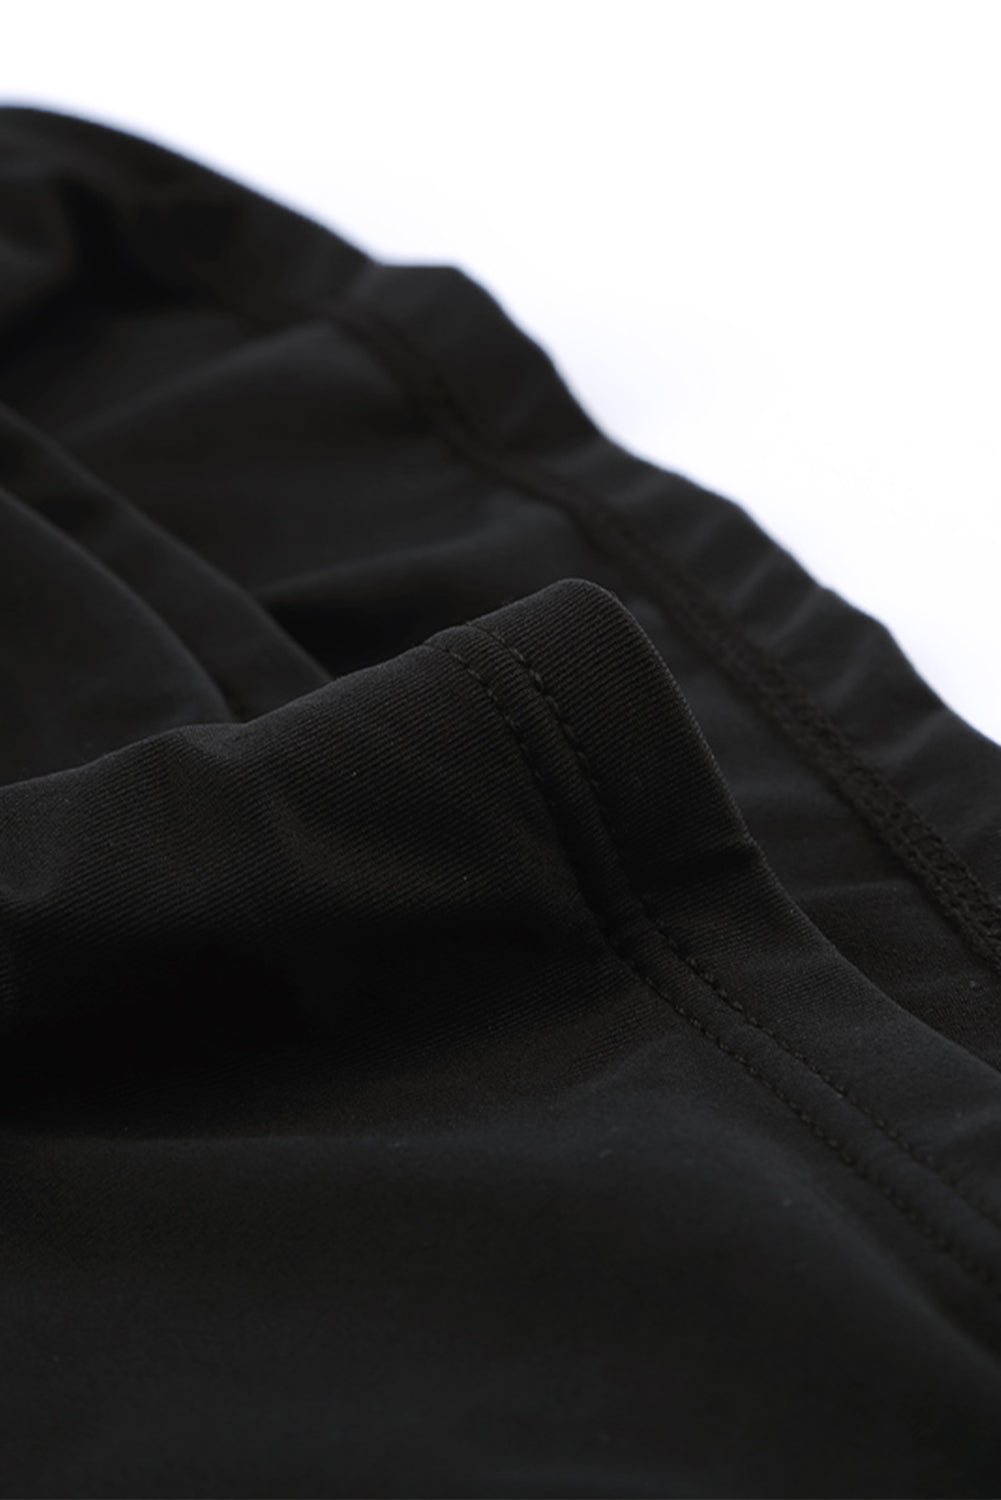 Costume da bagno tankini nero con scollo alto e rete increspata